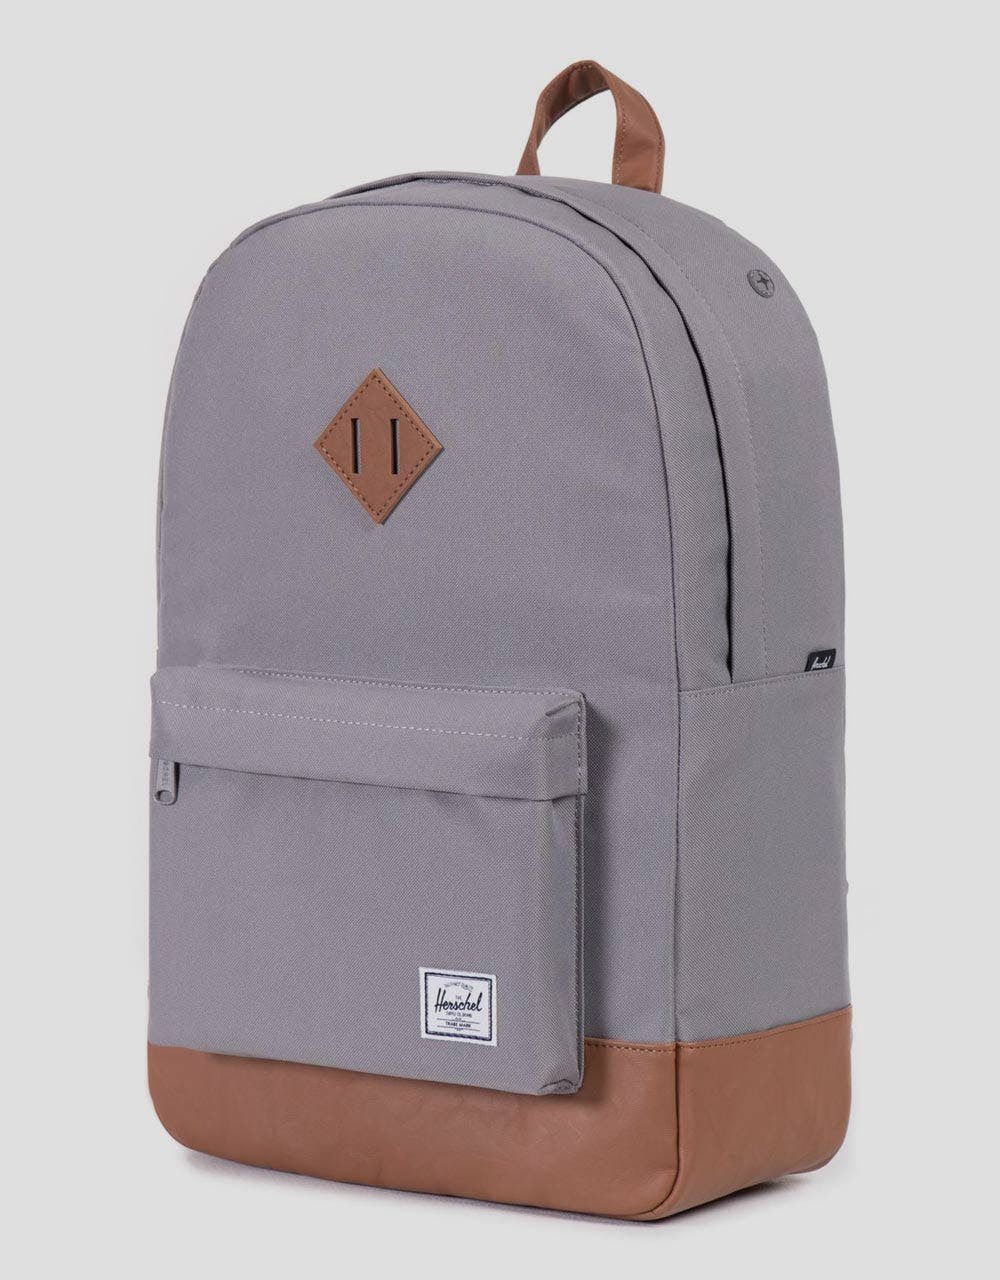 Herschel Supply Co. Heritage Backpack - Grey/Tan